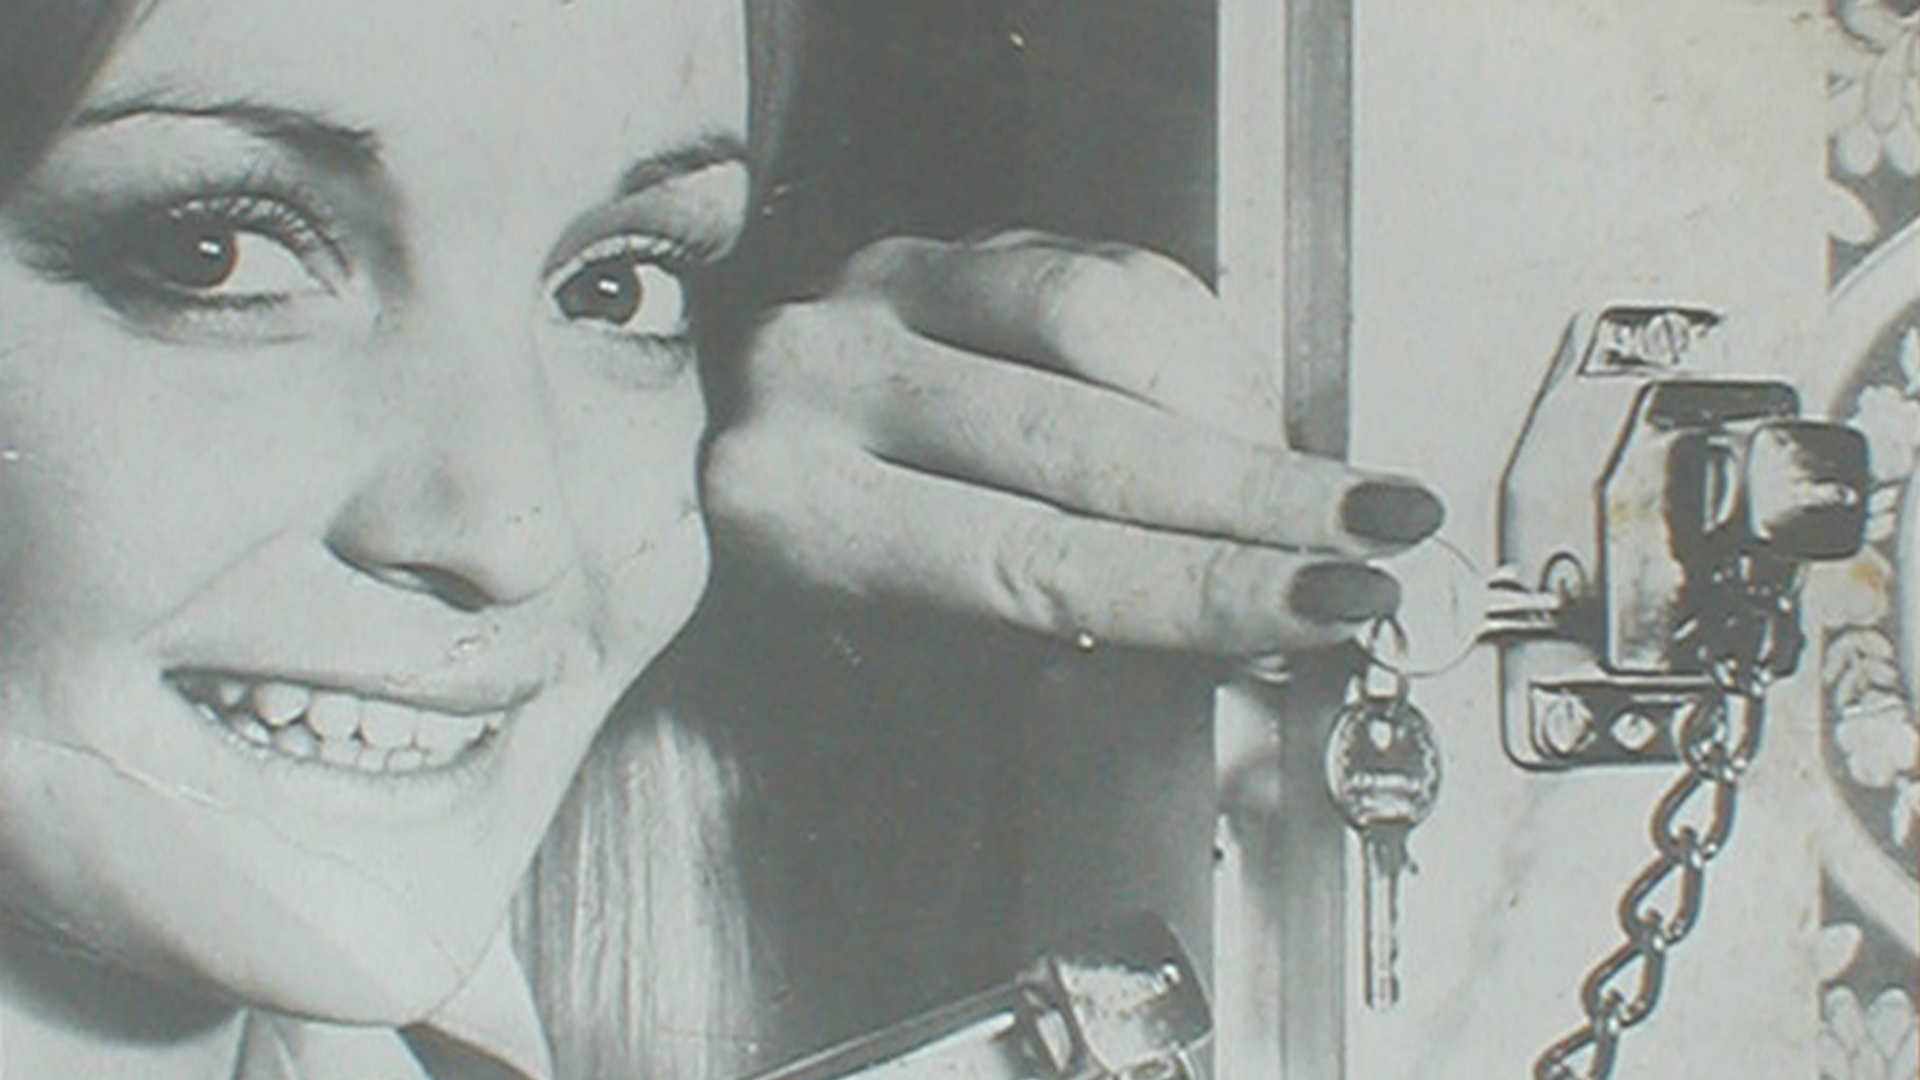 Kobieta zamykająca dodatkowy zamek w drzwiach © ABUS